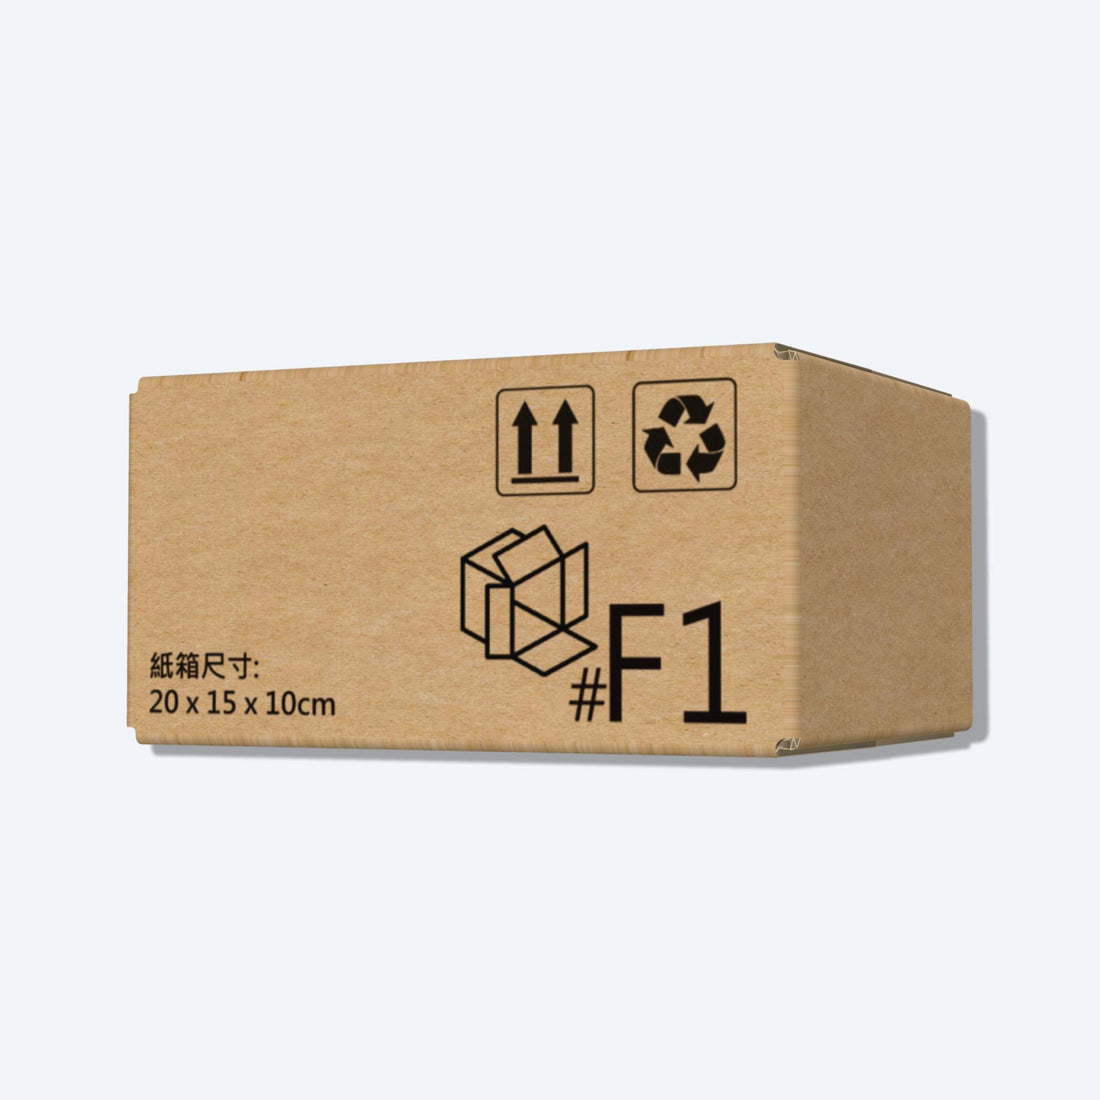 順豐速運F1尺寸紙箱側視圖，展示尺寸和質感，是適合小型物品運輸的理想選擇。